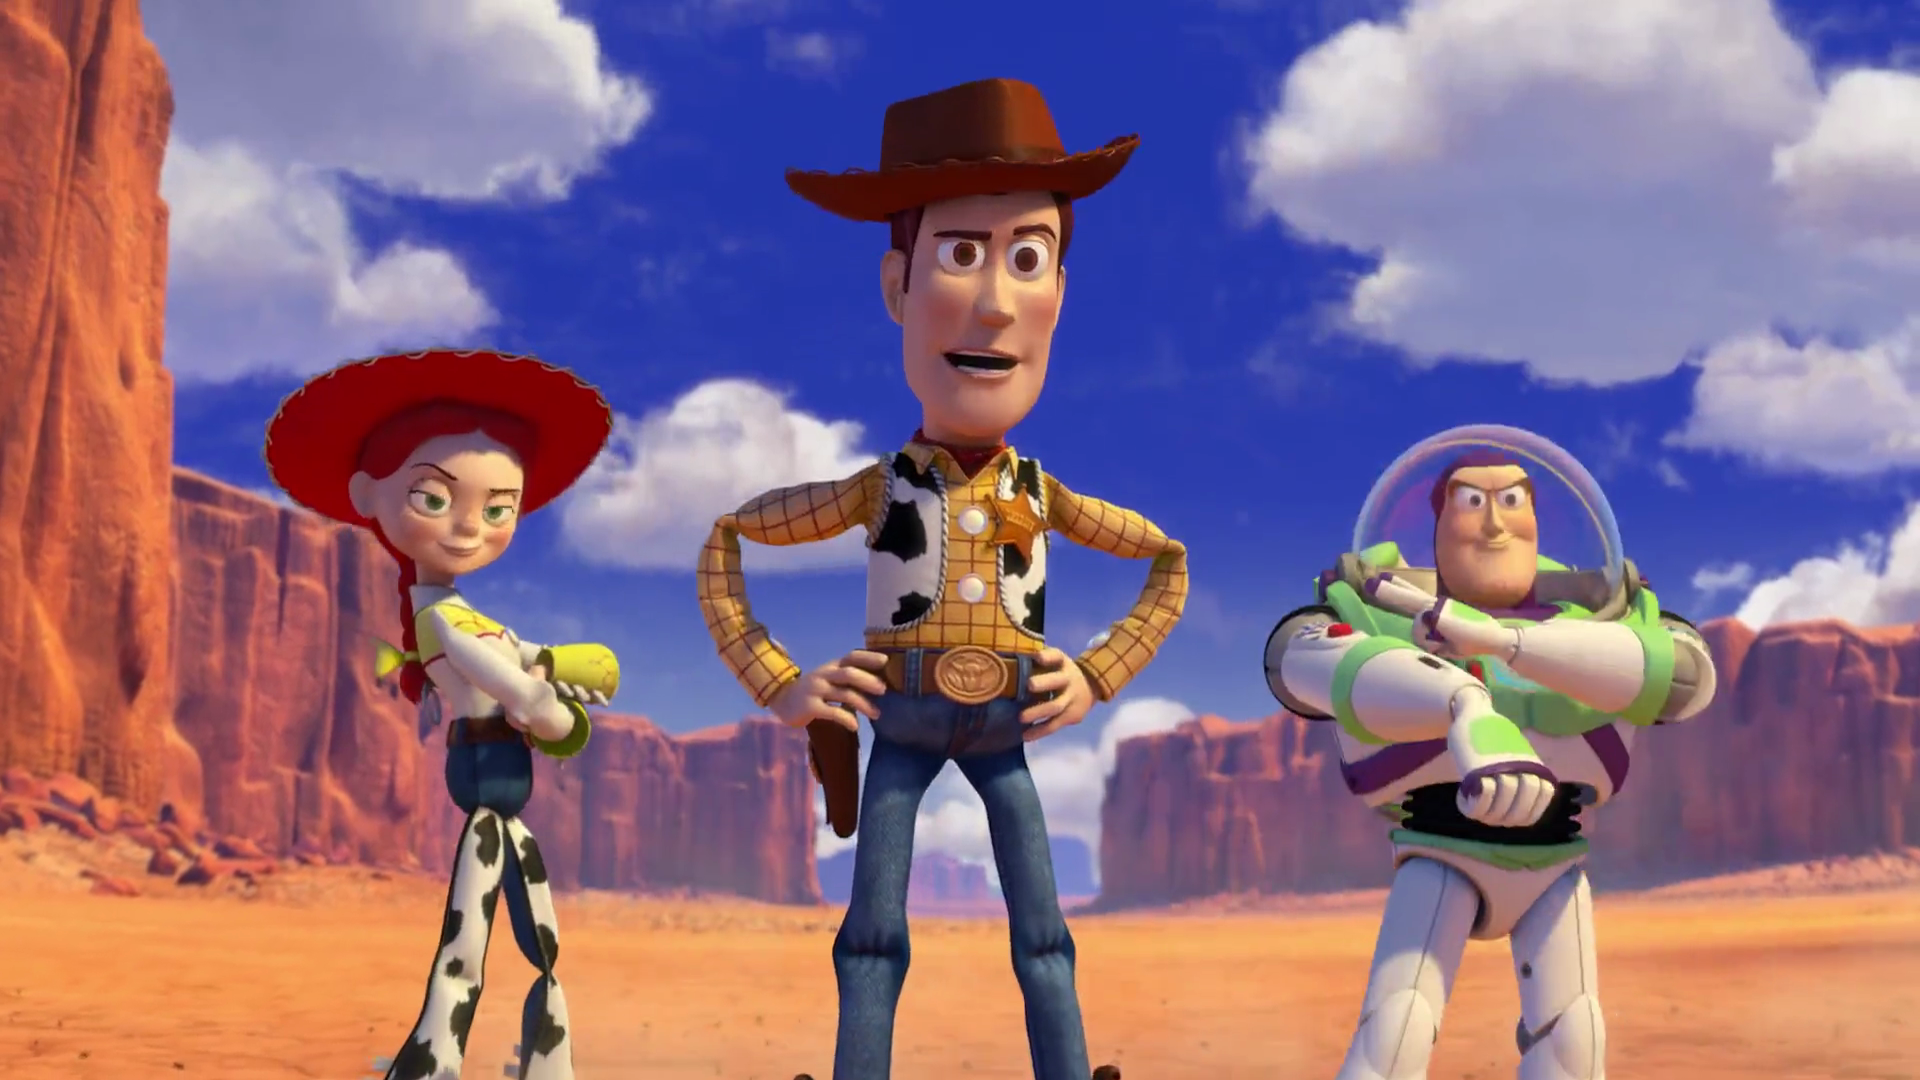 Shérif Woody et Buzz l'éclair de Toy Story, nouvelles poupées pour garçon